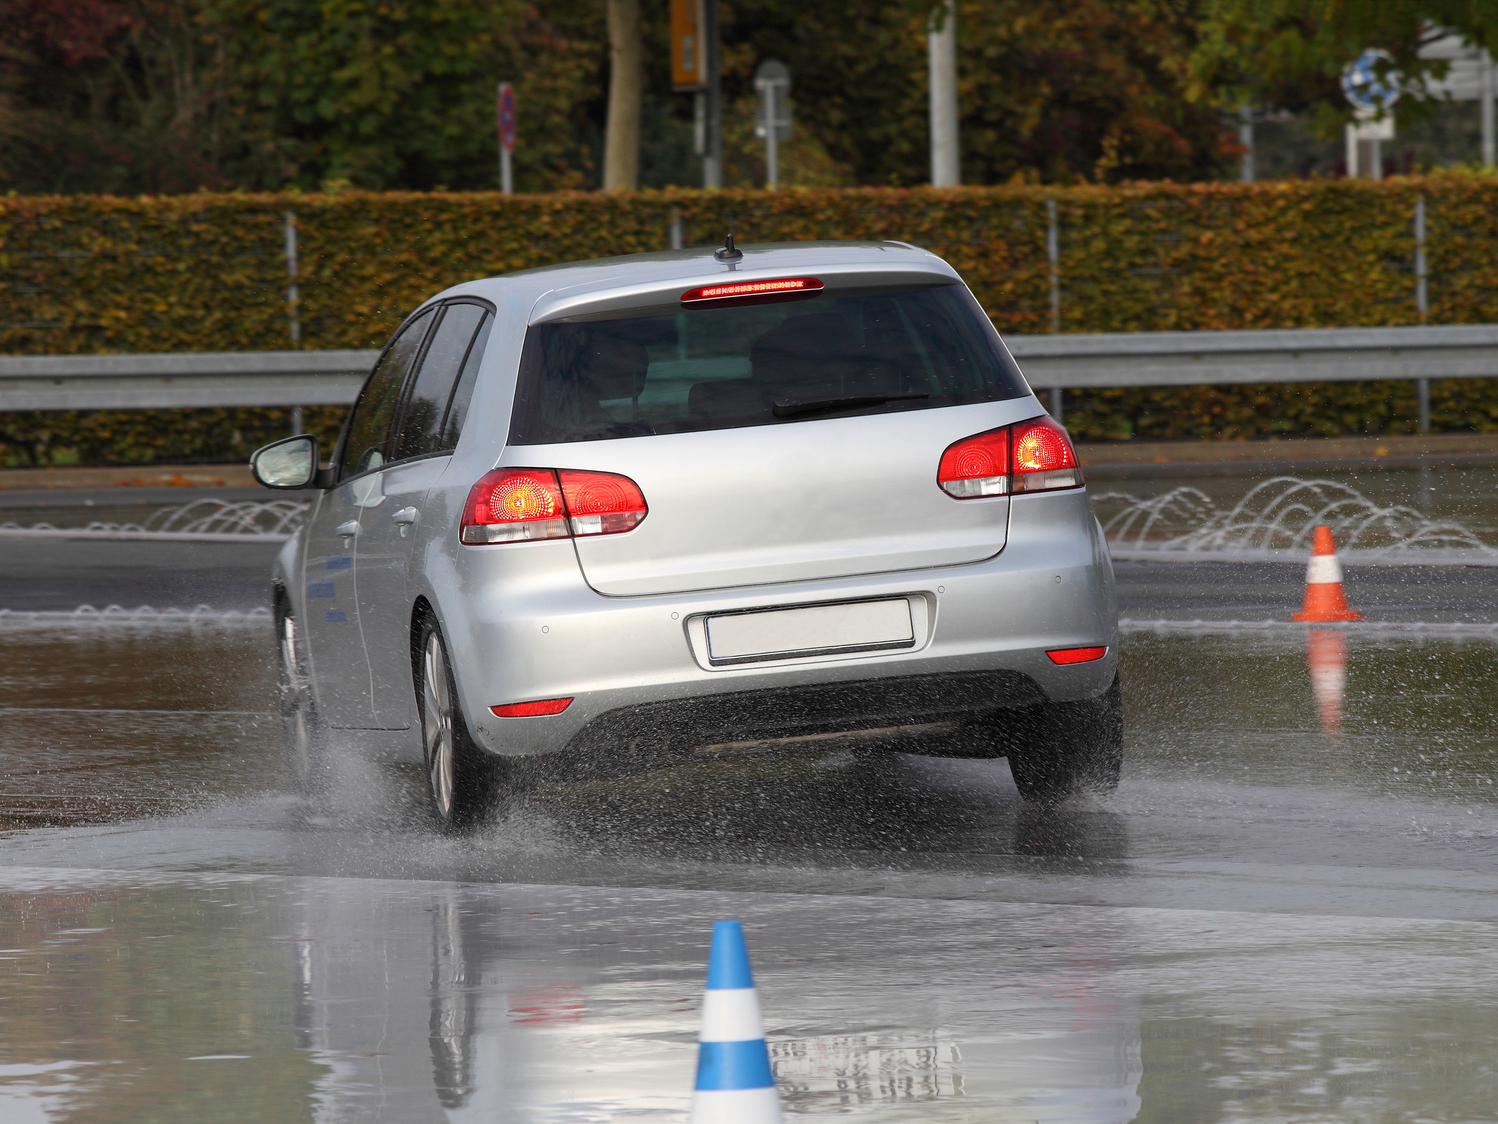 Ein Auto fährt auf einer nassen Straße, auf der zwei Leitkegel aufgestellt sind.